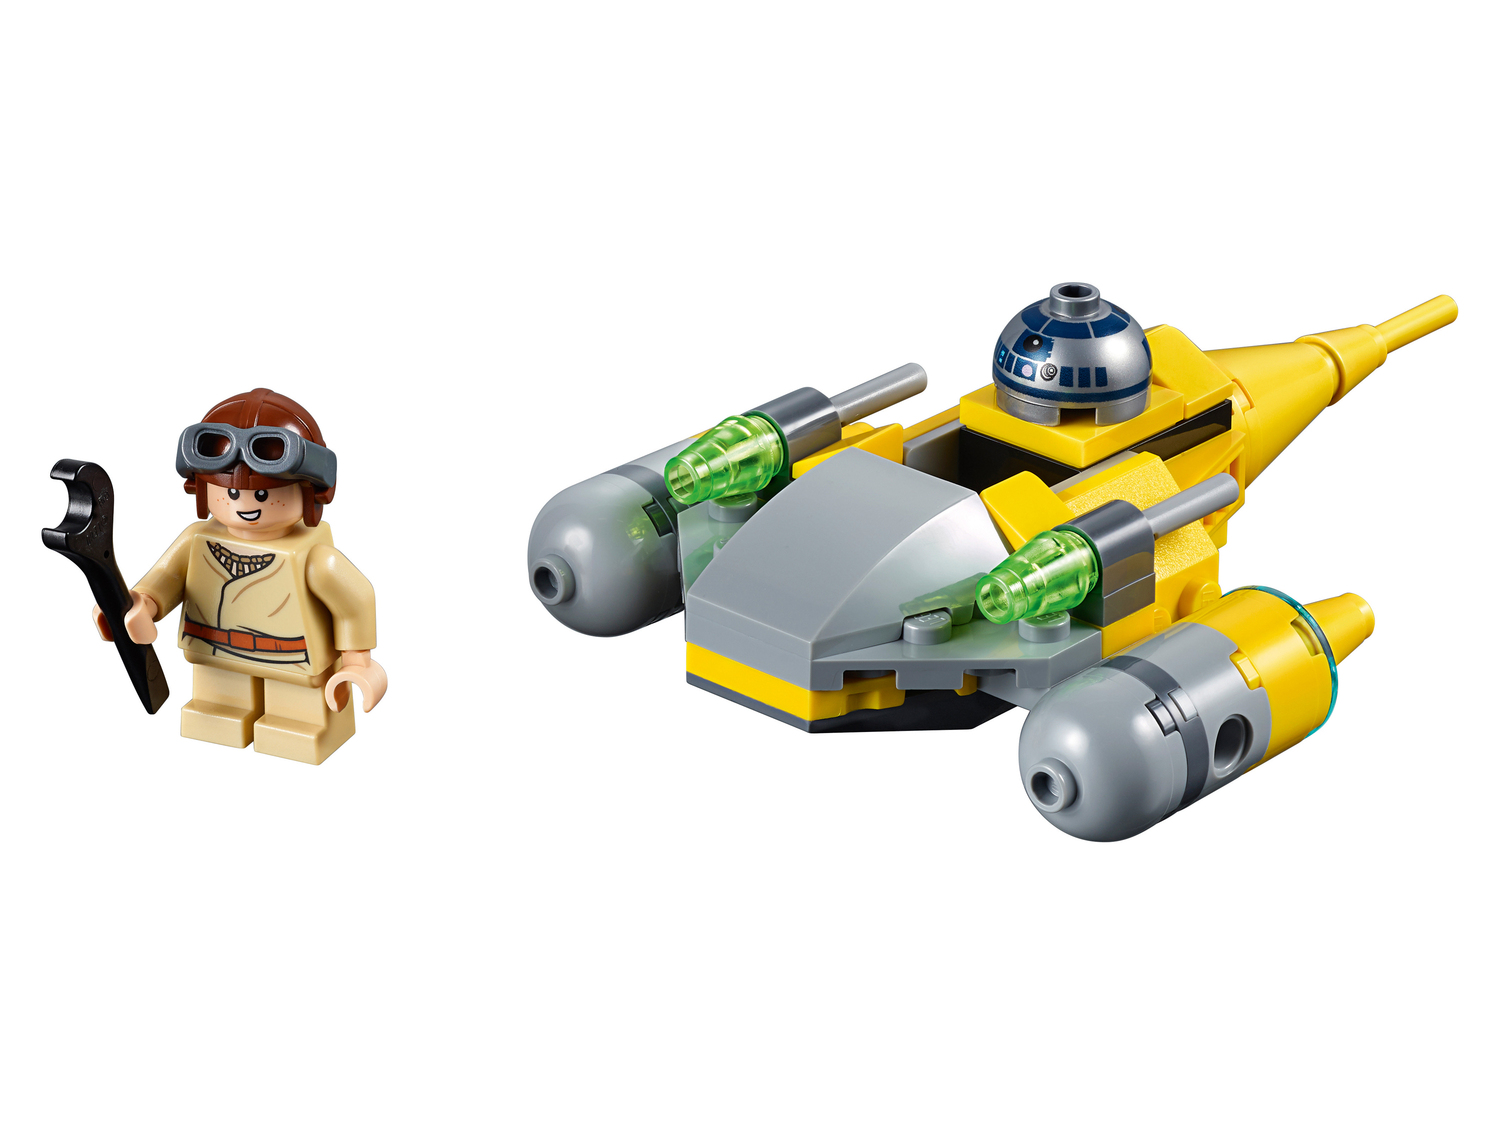 Costruzioni Star-wars, prezzo 8.99 €  

Caratteristiche

- Lego 751194